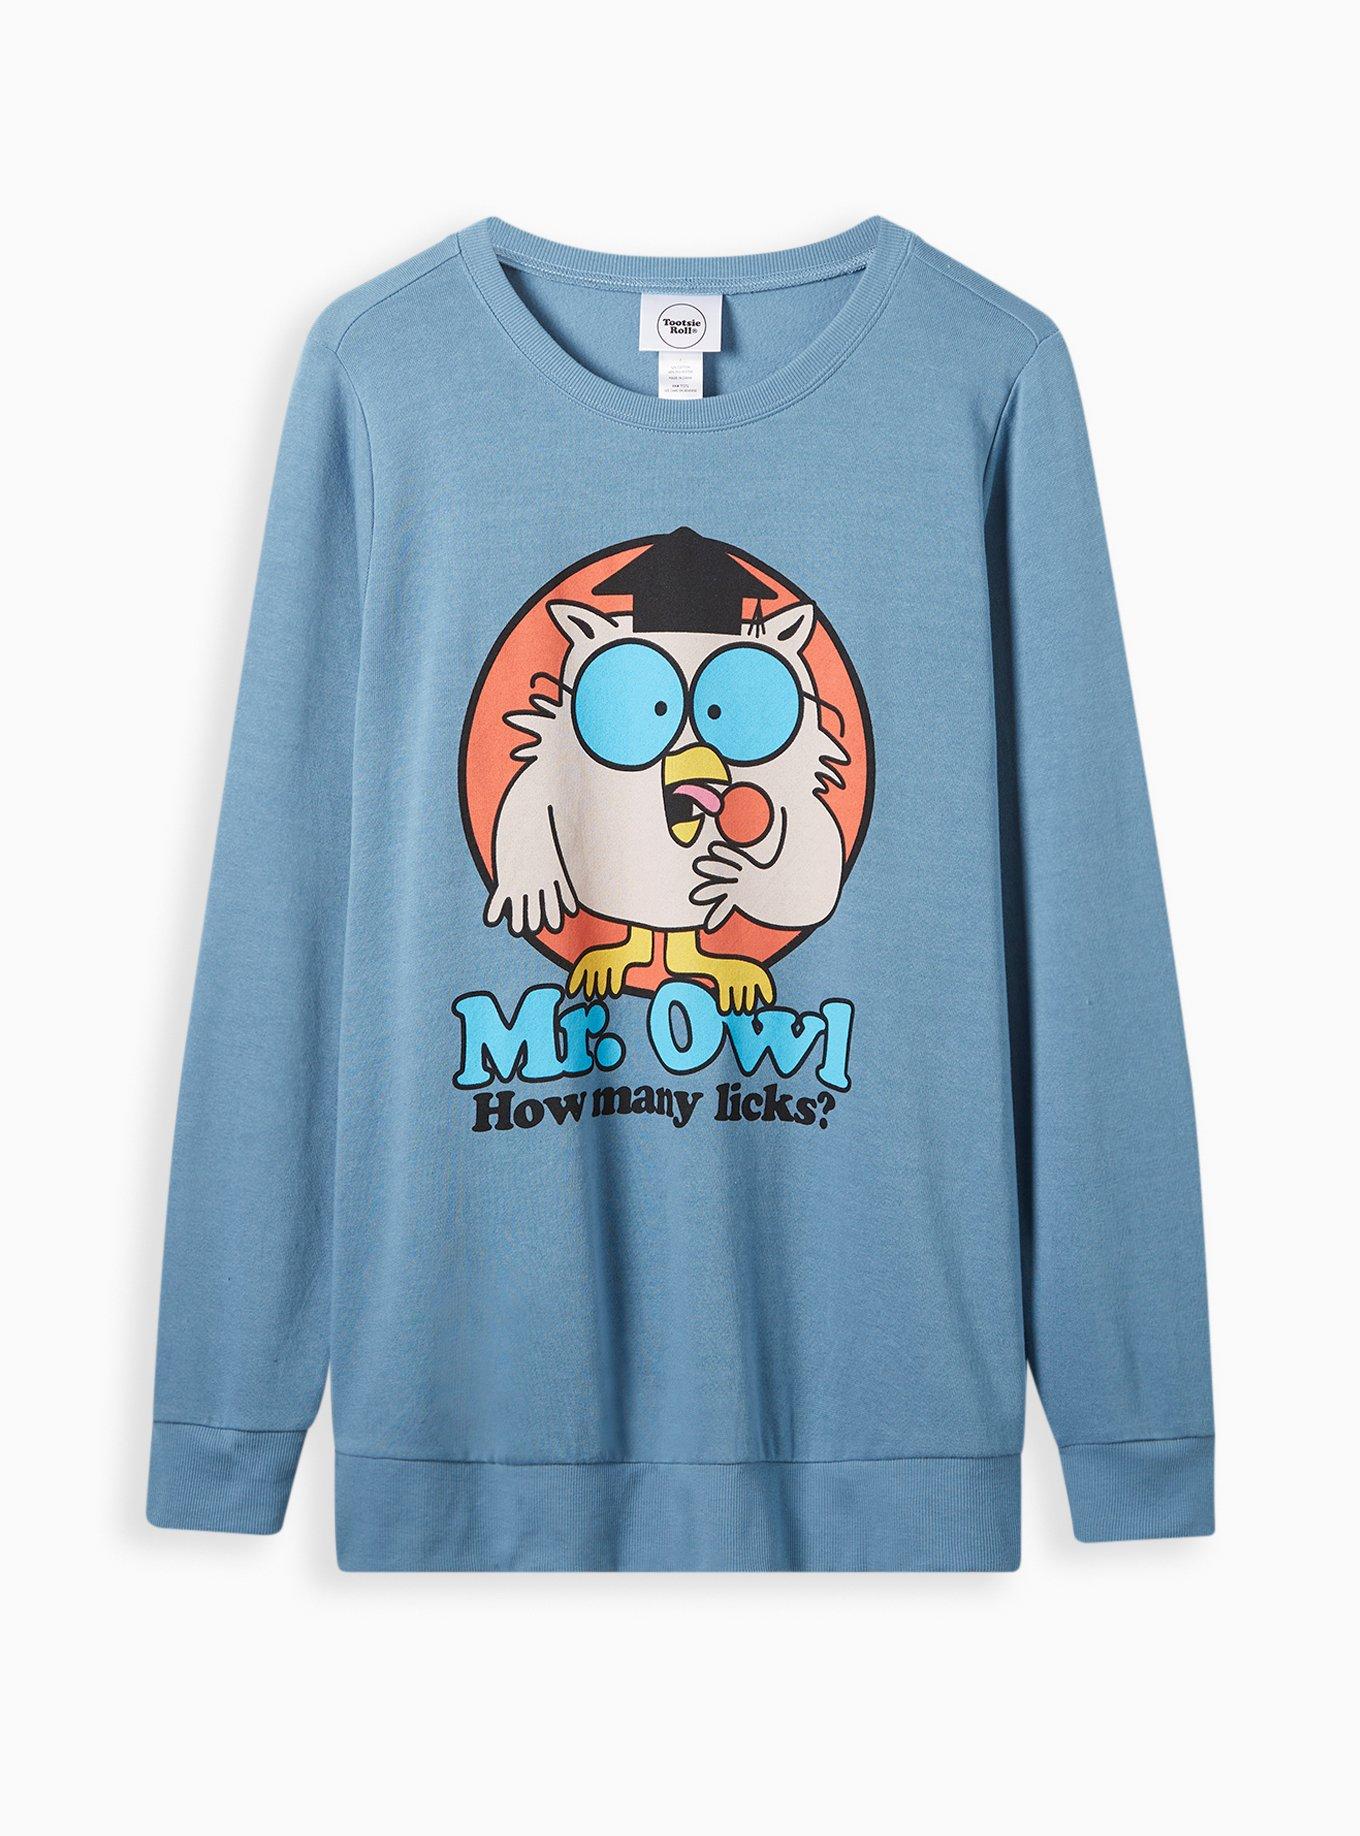 Fleece Pullover Hoodie, Nite Owl Marketing